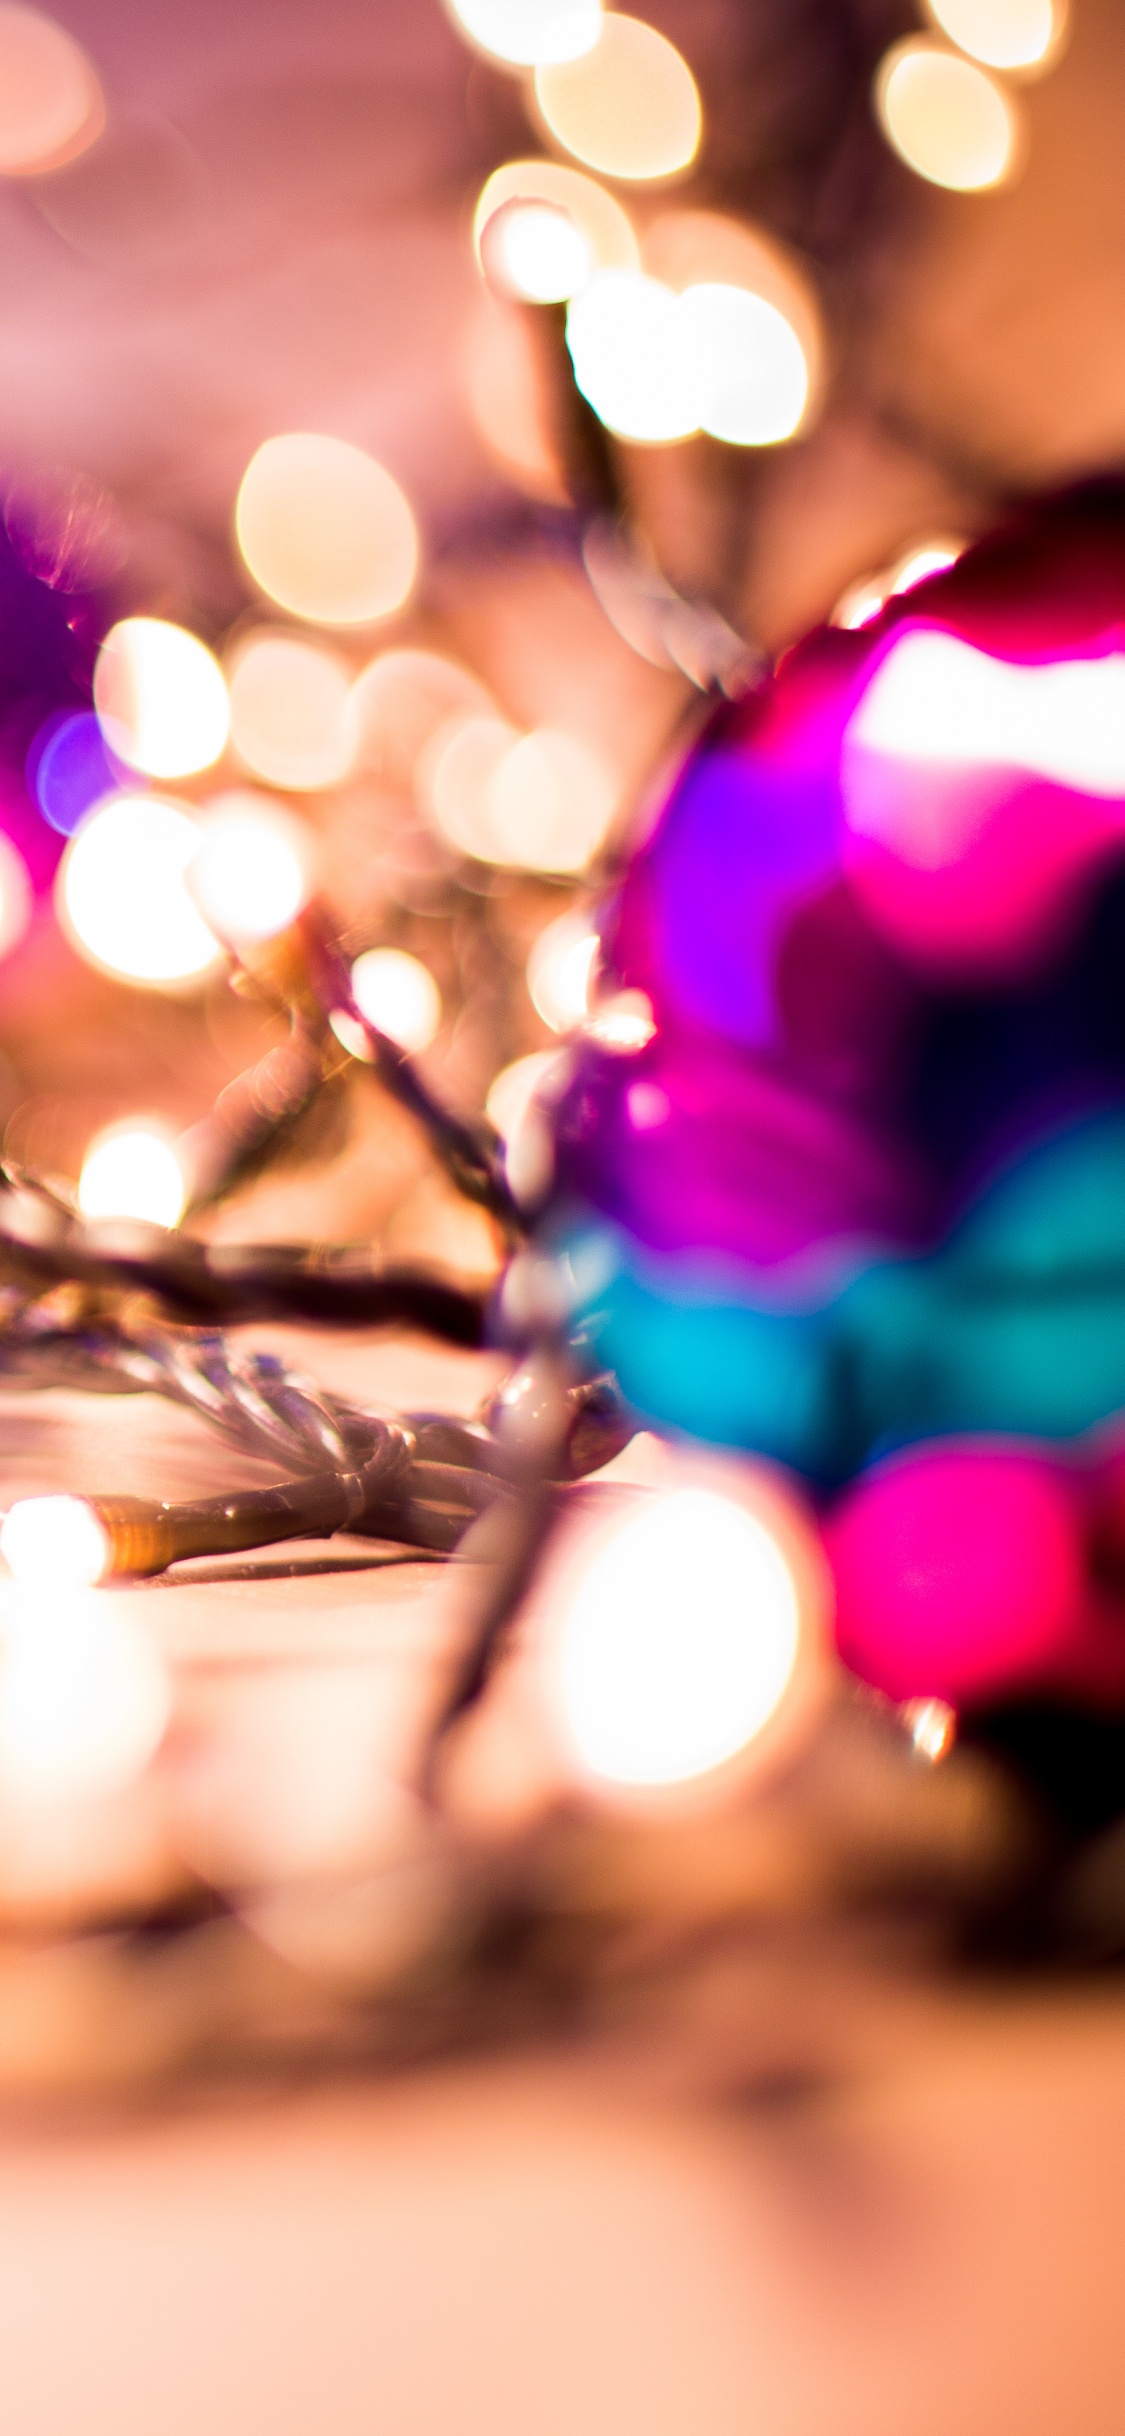 Weihnachten, Weihnachts-und Ferienzeit, Weihnachtsbeleuchtung, Pink, Licht. Wallpaper in 1125x2436 Resolution